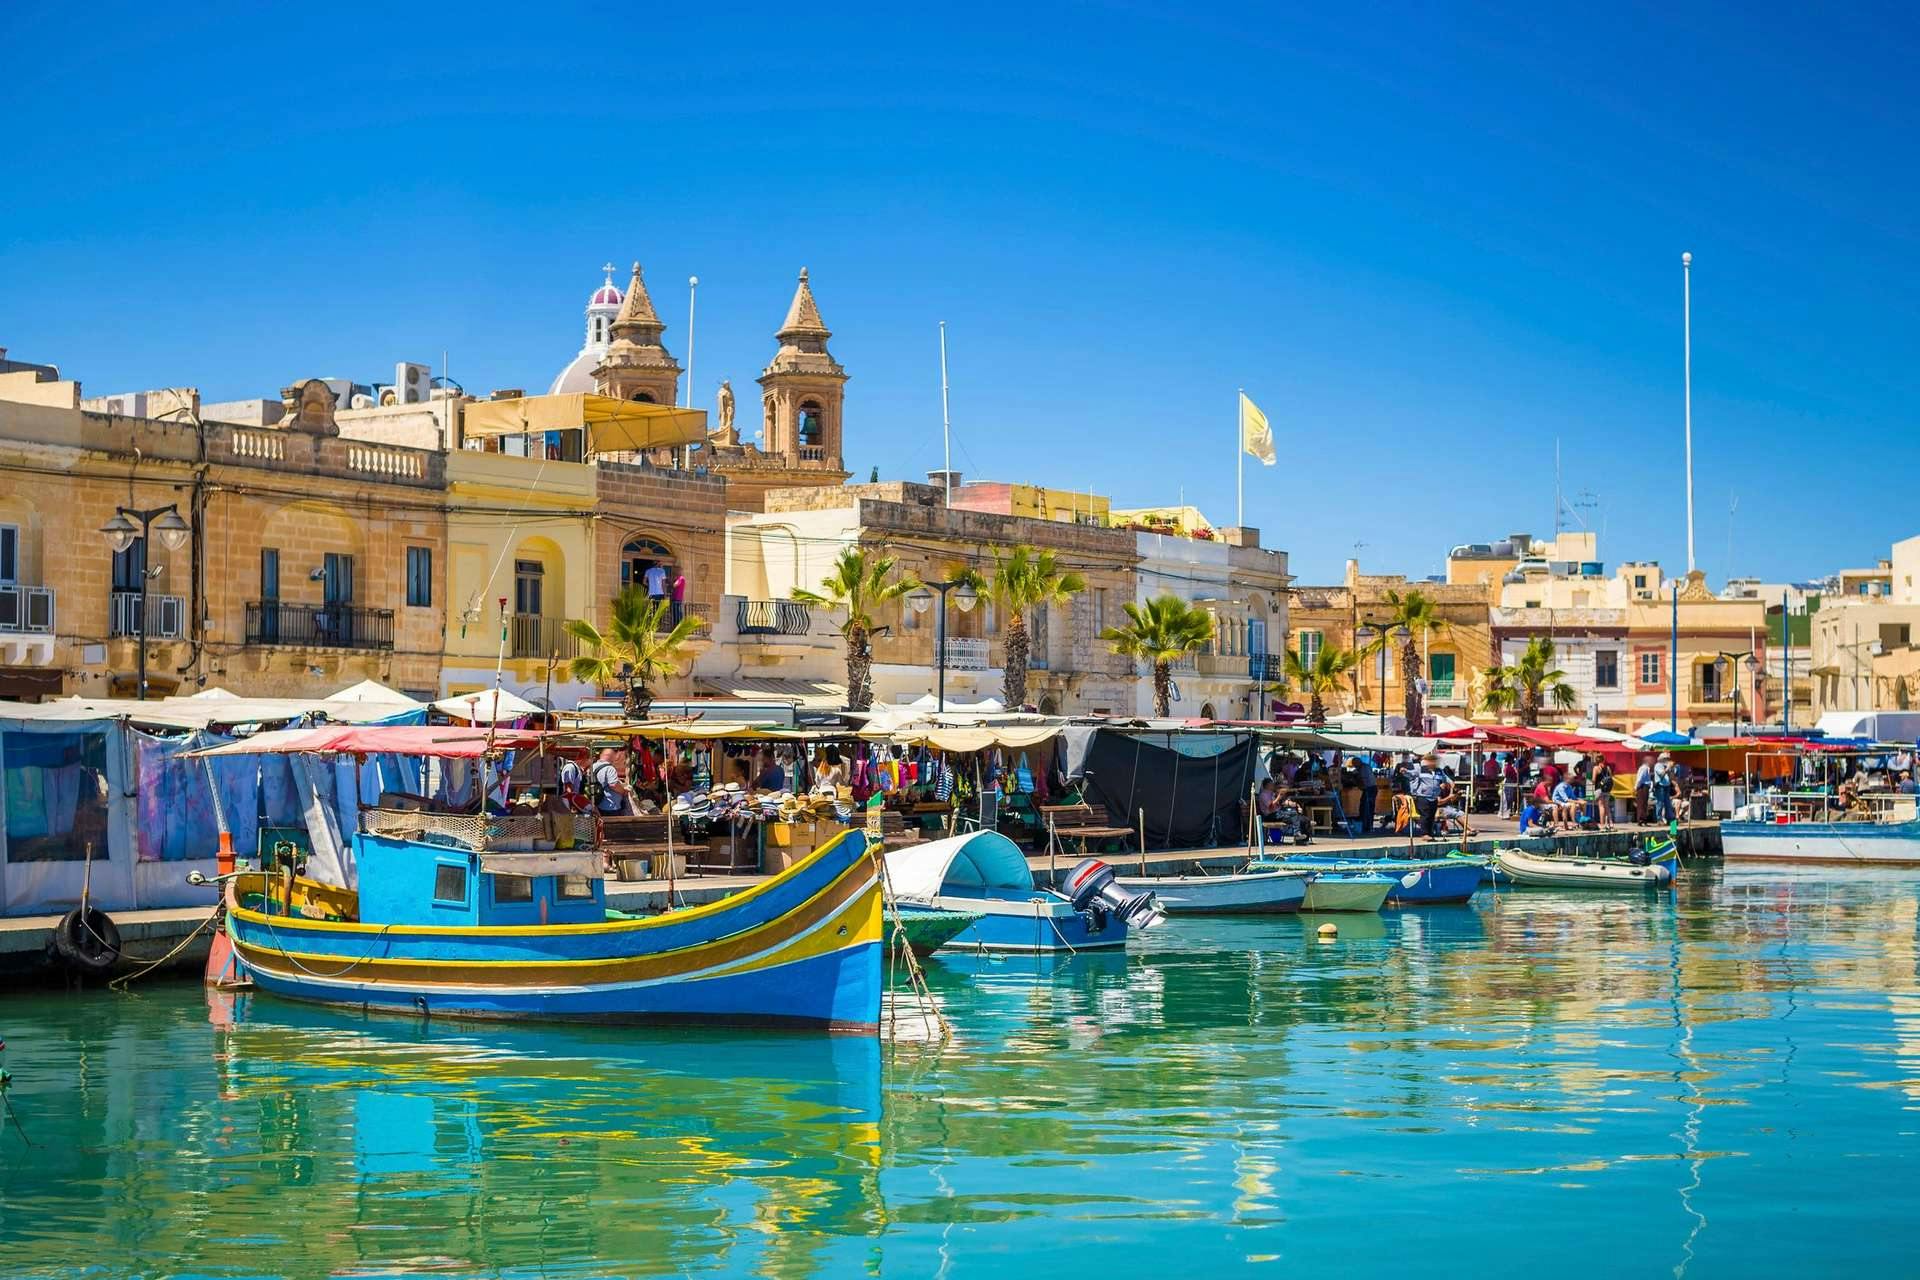 Goedkope vakantie Malta